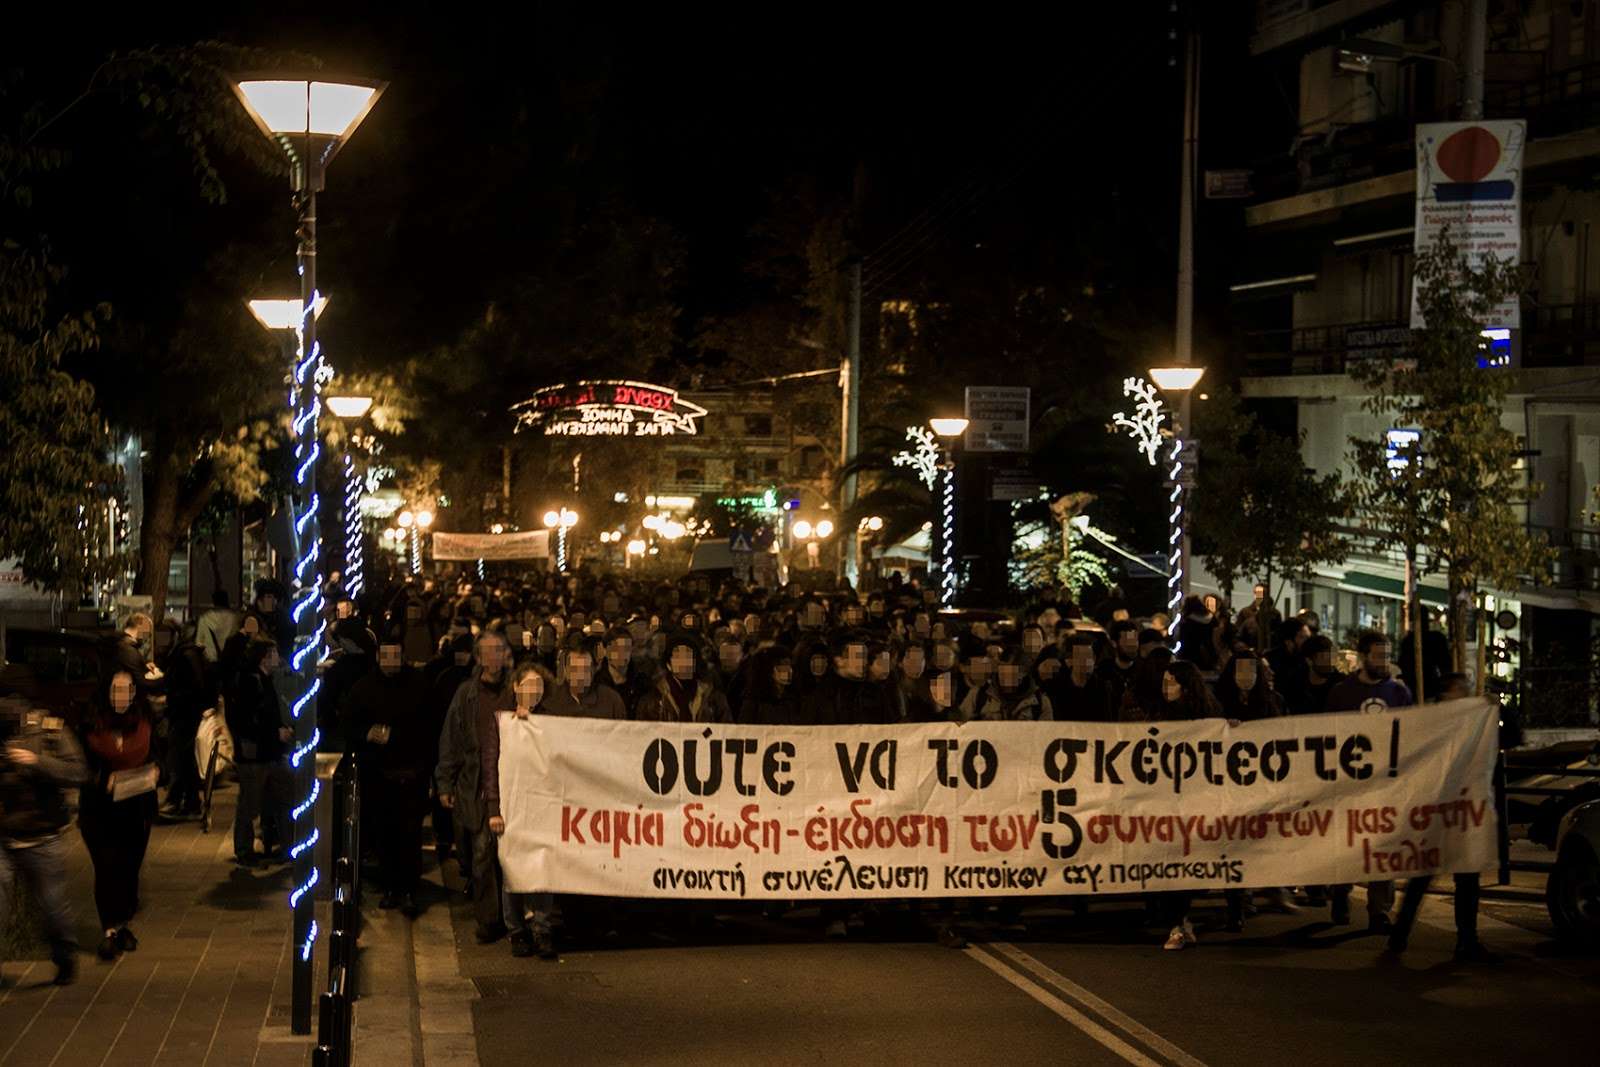 Αθήνα: Συνέλευση ενημέρωσης και συντονισμού ενάντια στις νέες κατασταλτικές μεθοδεύσεις [Παρασκευή 27/01, 19:00]